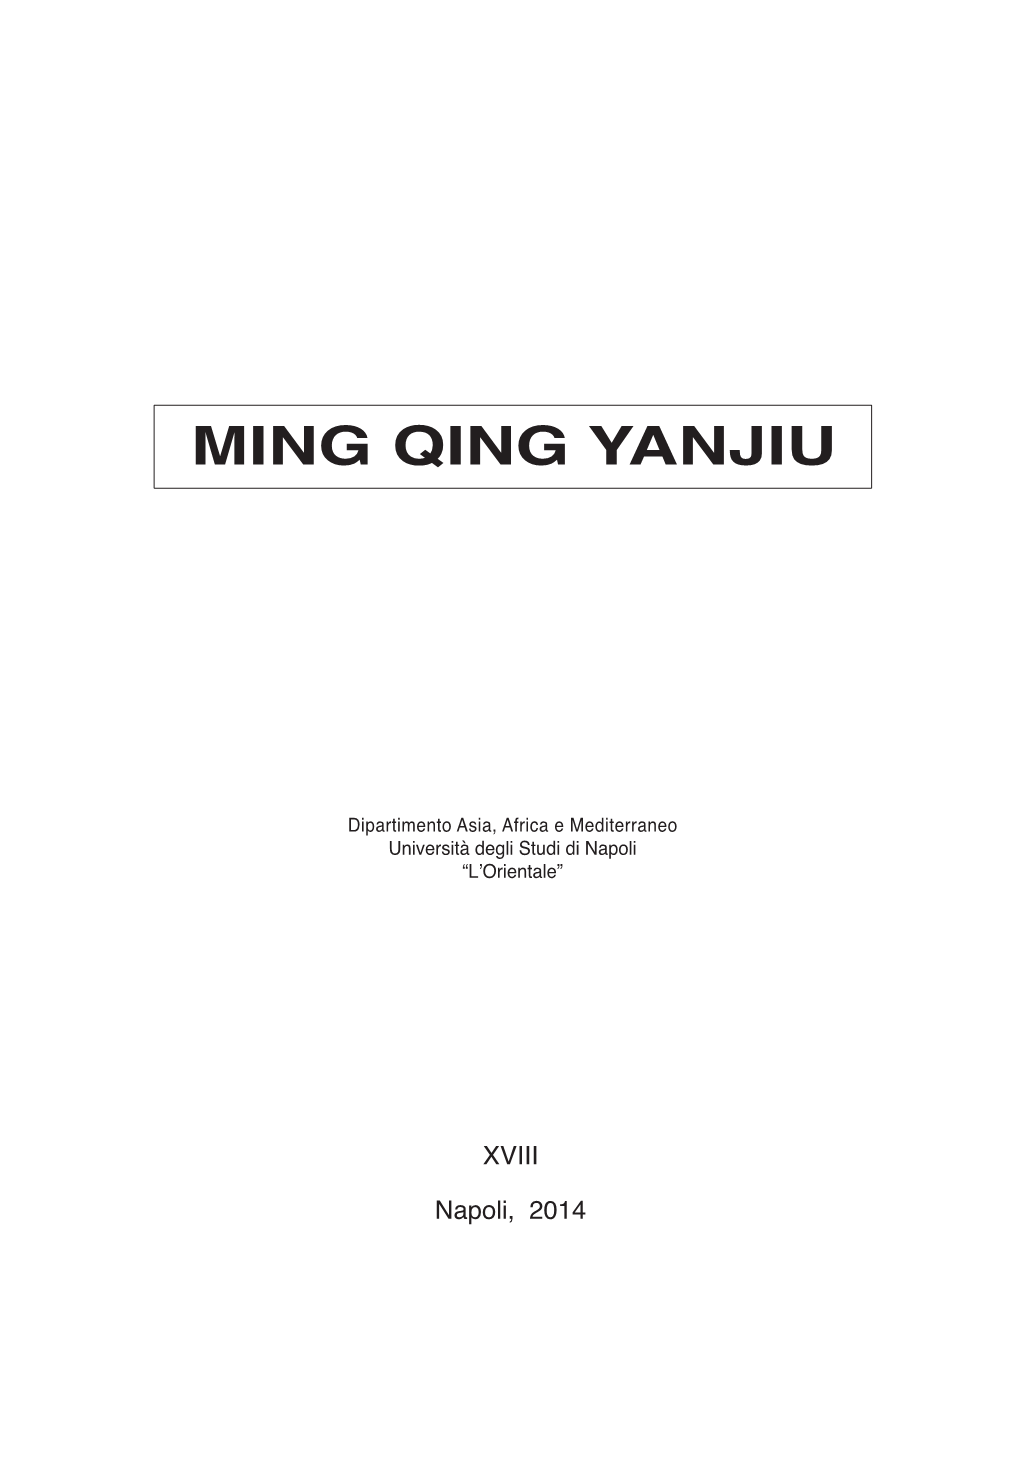 Ming Qing Yanjiu, Vol. XVIII